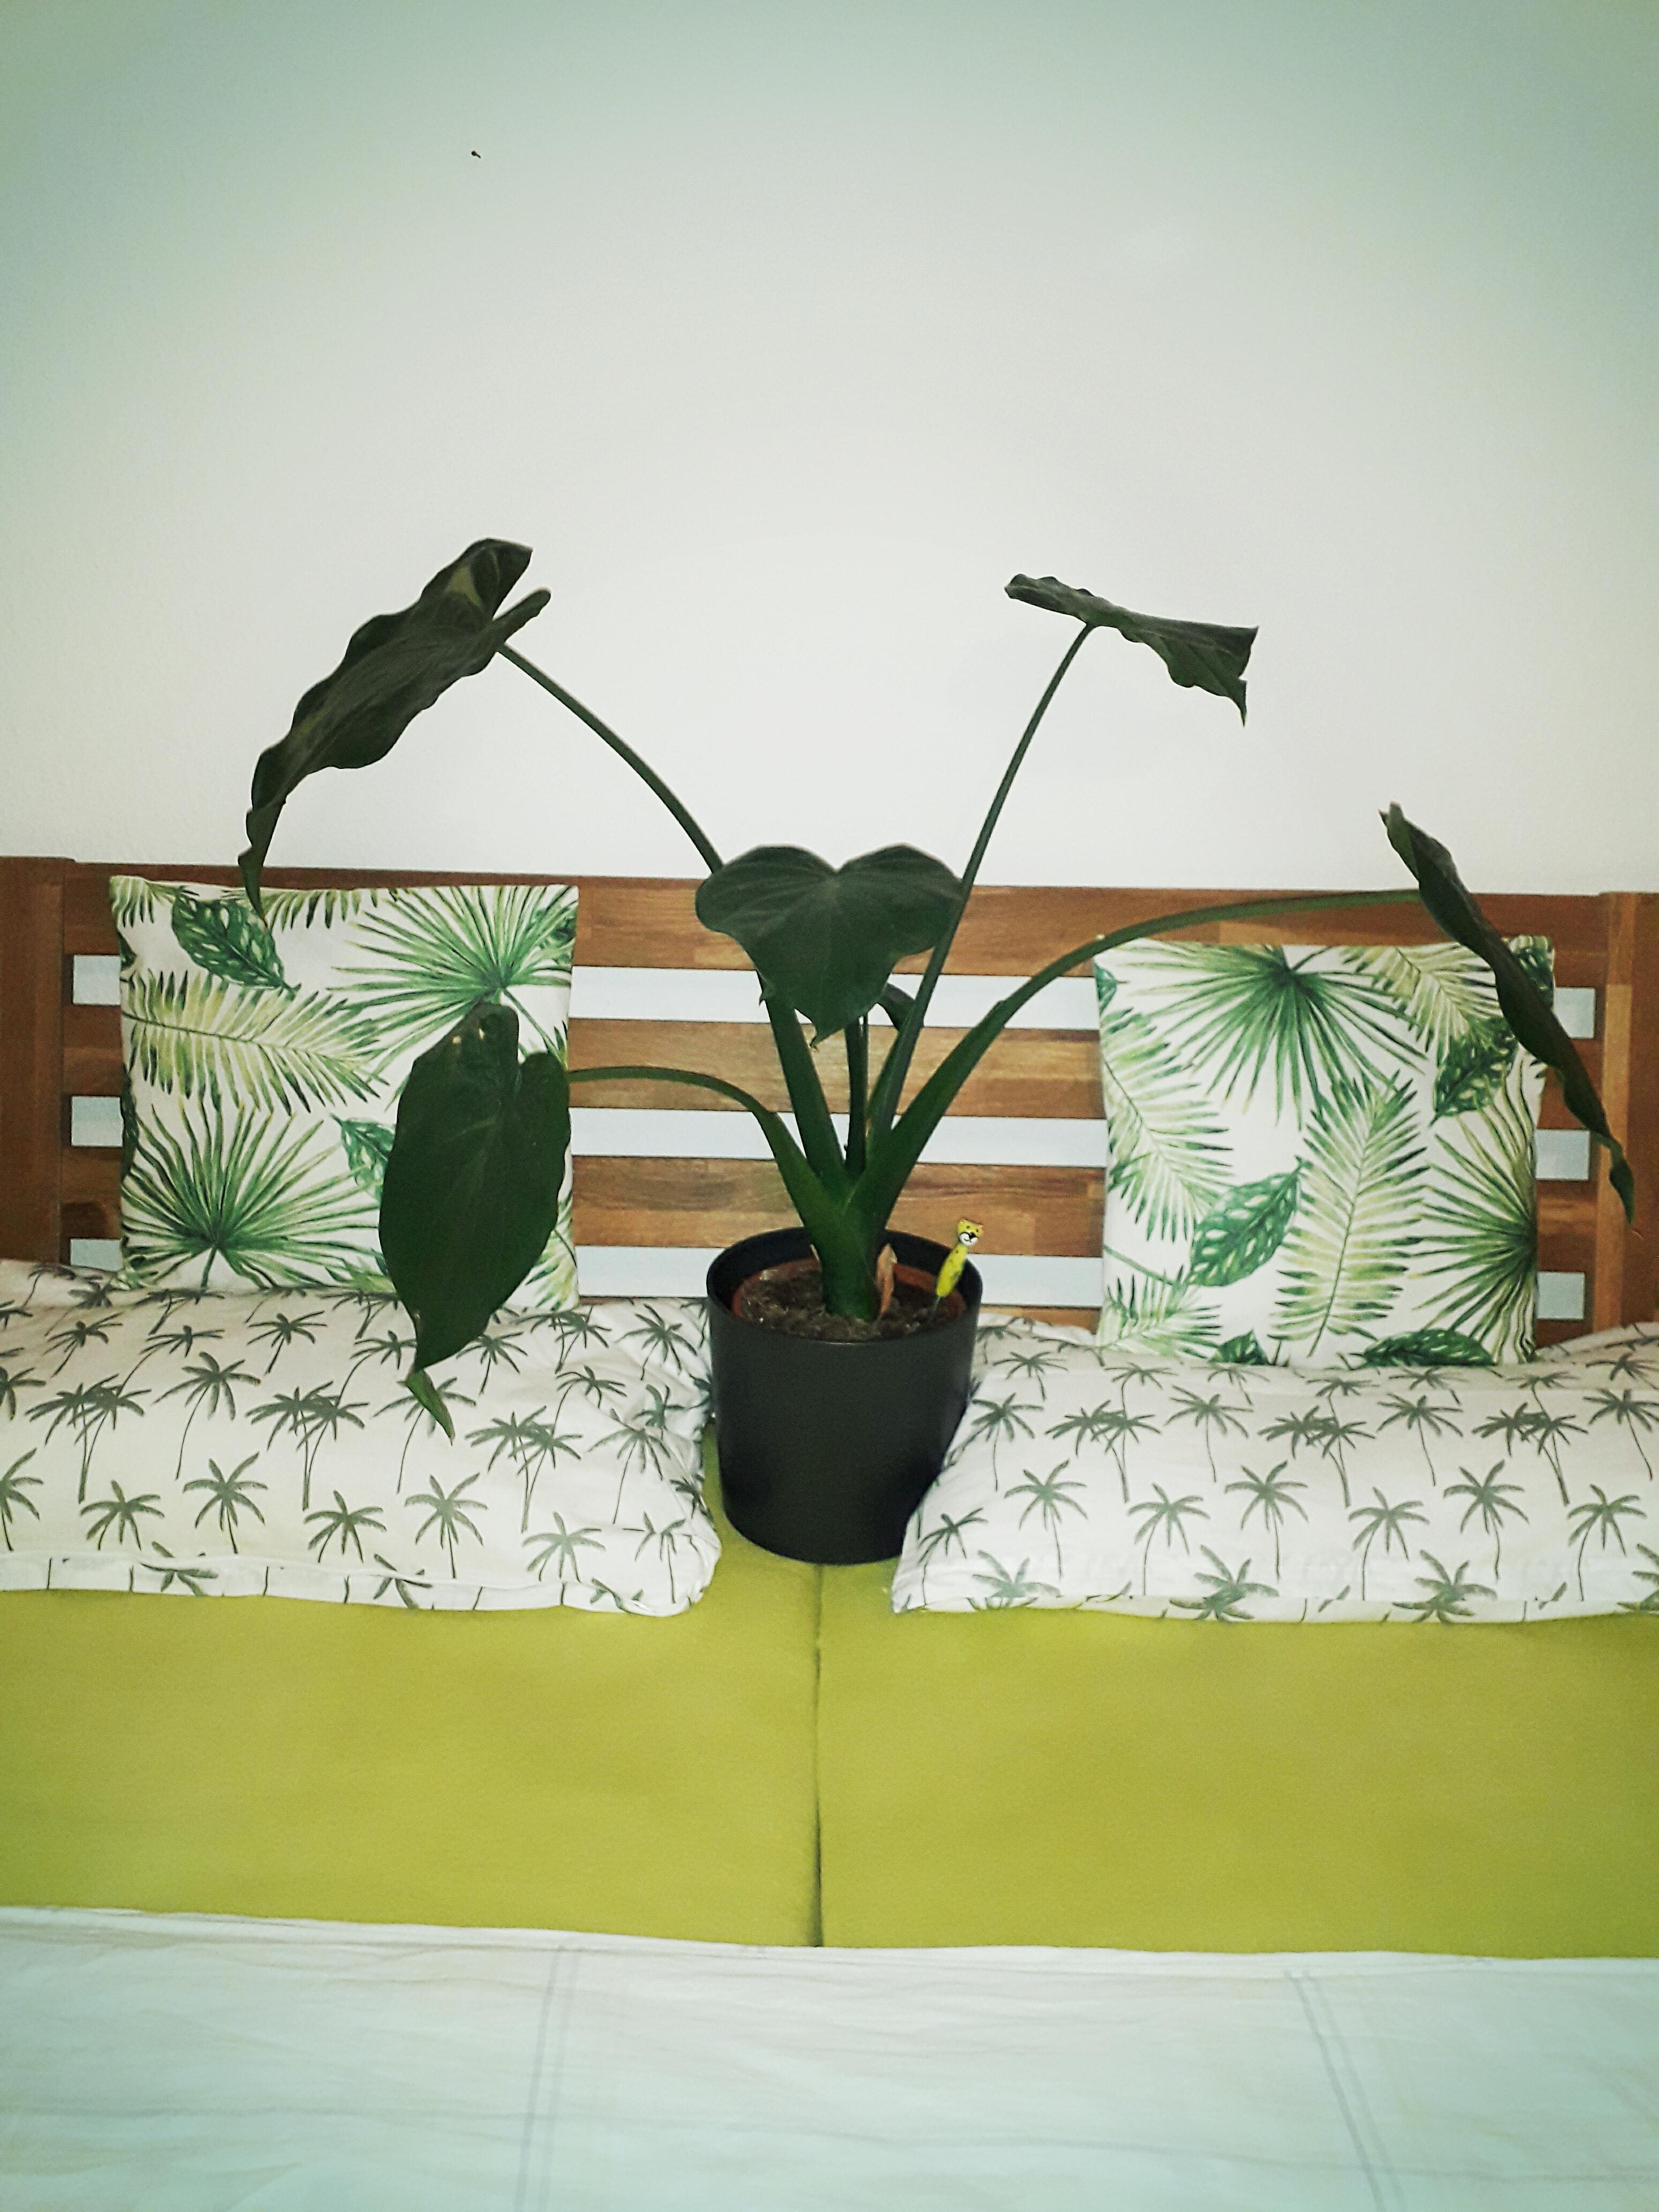 Urban jungle in the bedroom 🌱🌴😁
#grün #pflanze #bett #bettwäsche #botanik #muster #schlafzimmer